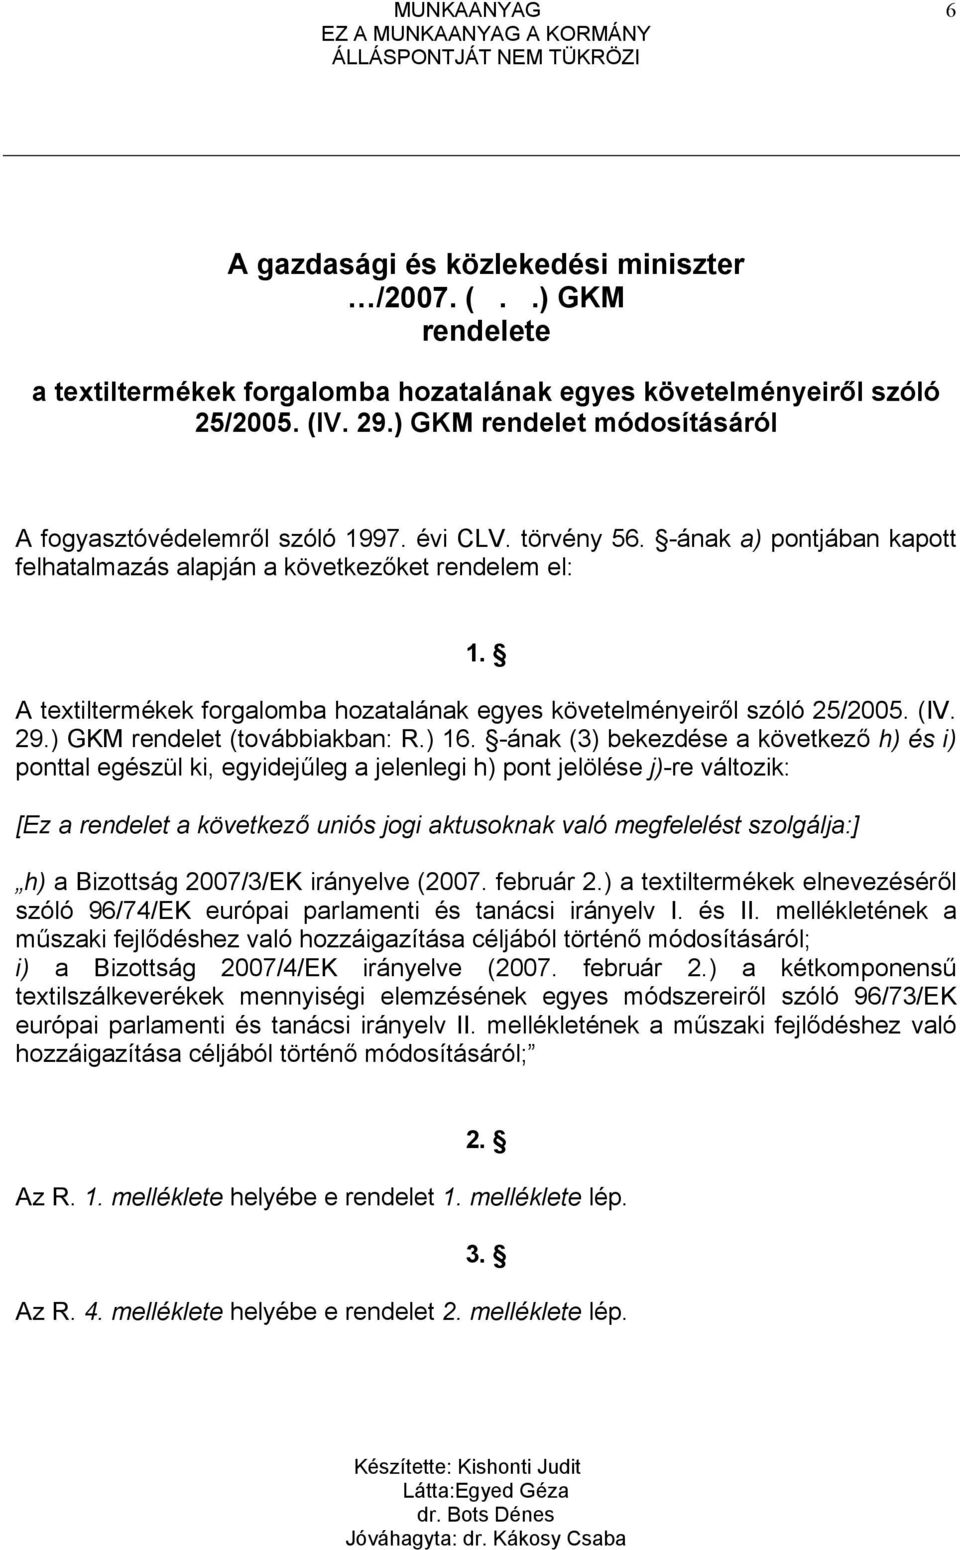 A textiltermékek forgalomba hozatalának egyes követelményeiről szóló 25/2005. (IV. 29.) GKM rendelet (továbbiakban: R.) 16.